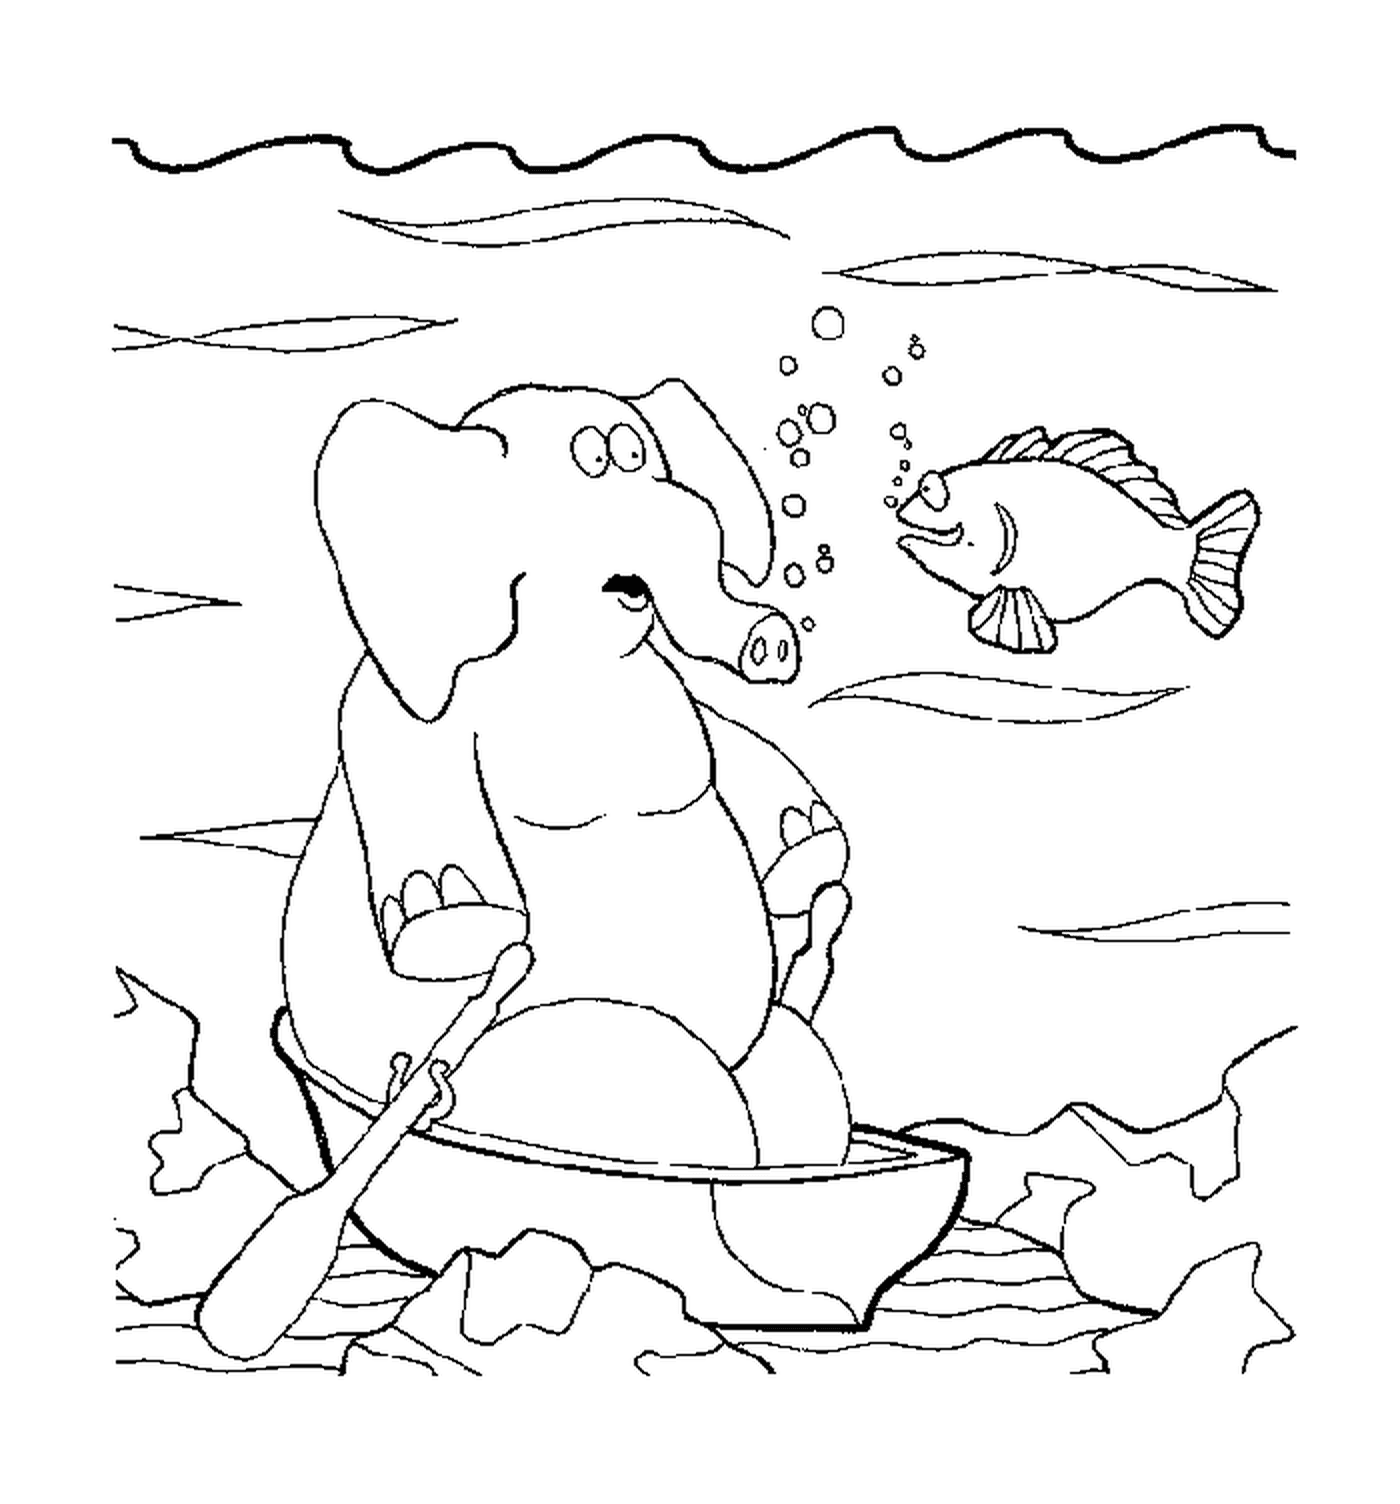  Un elefante sotto l'acqua 